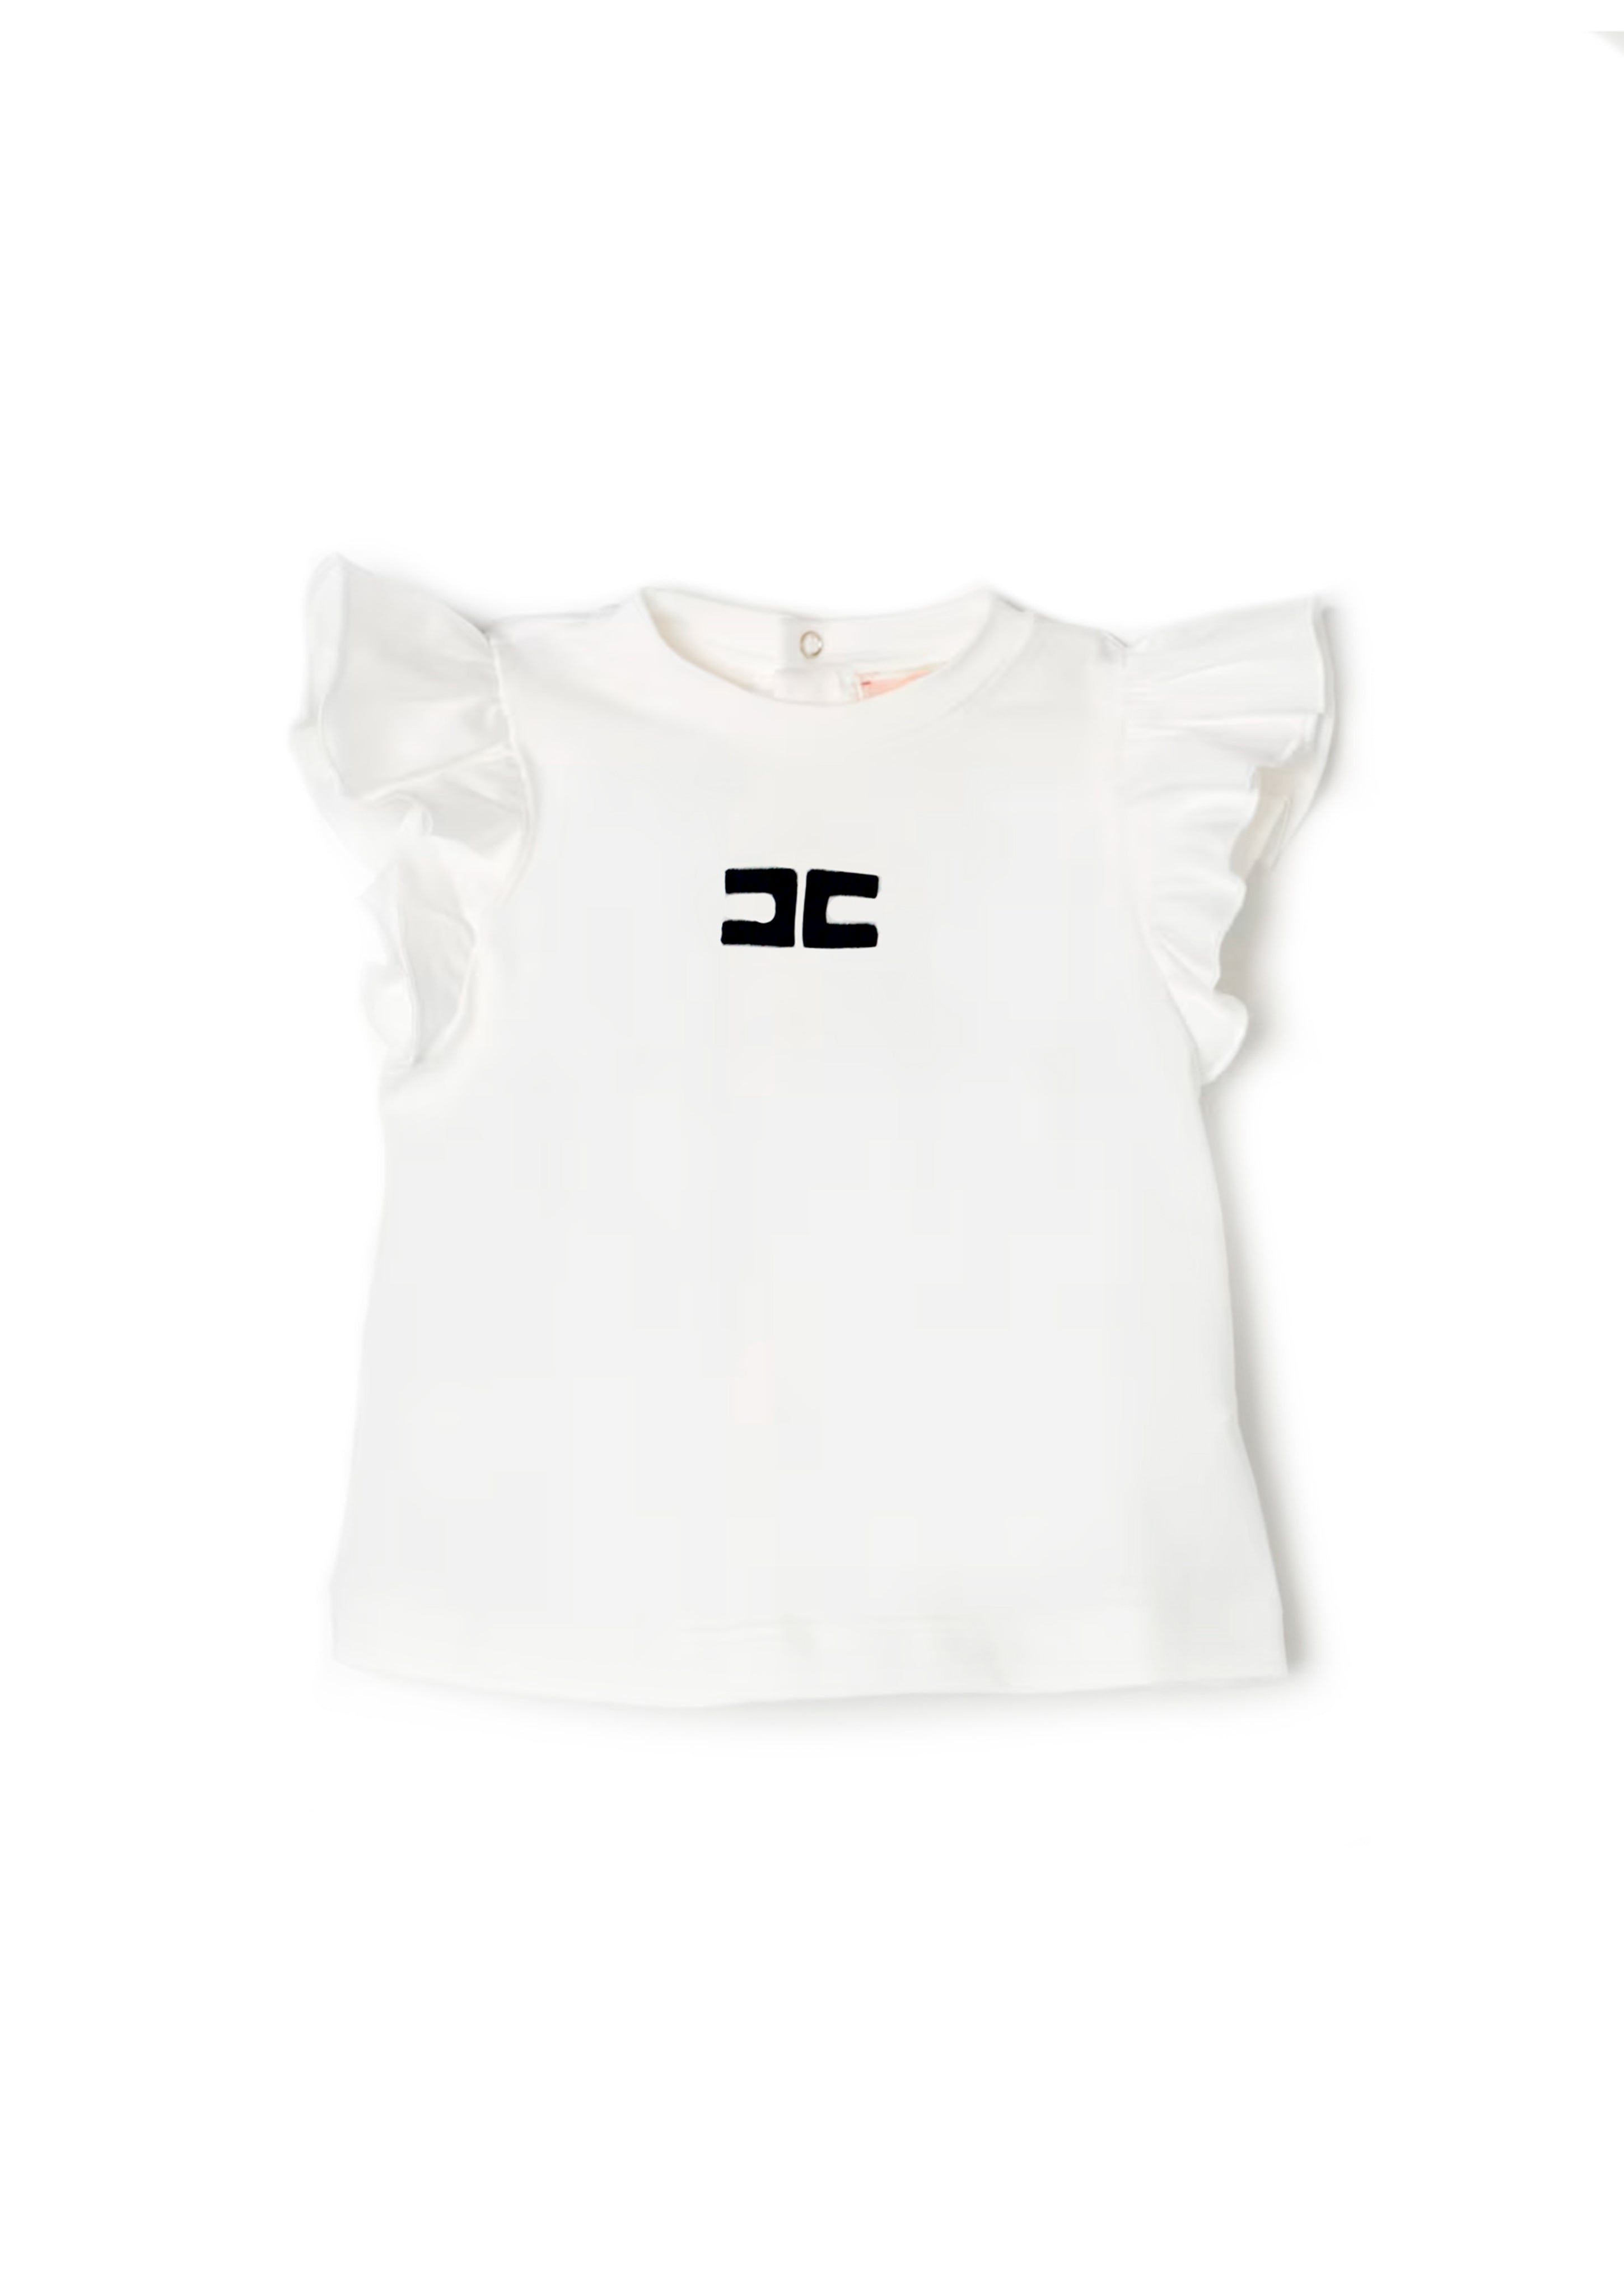 Elisabetta Franchi La Mia Bambina T-Shirt Avorio/Nero per Neonate (fronte)